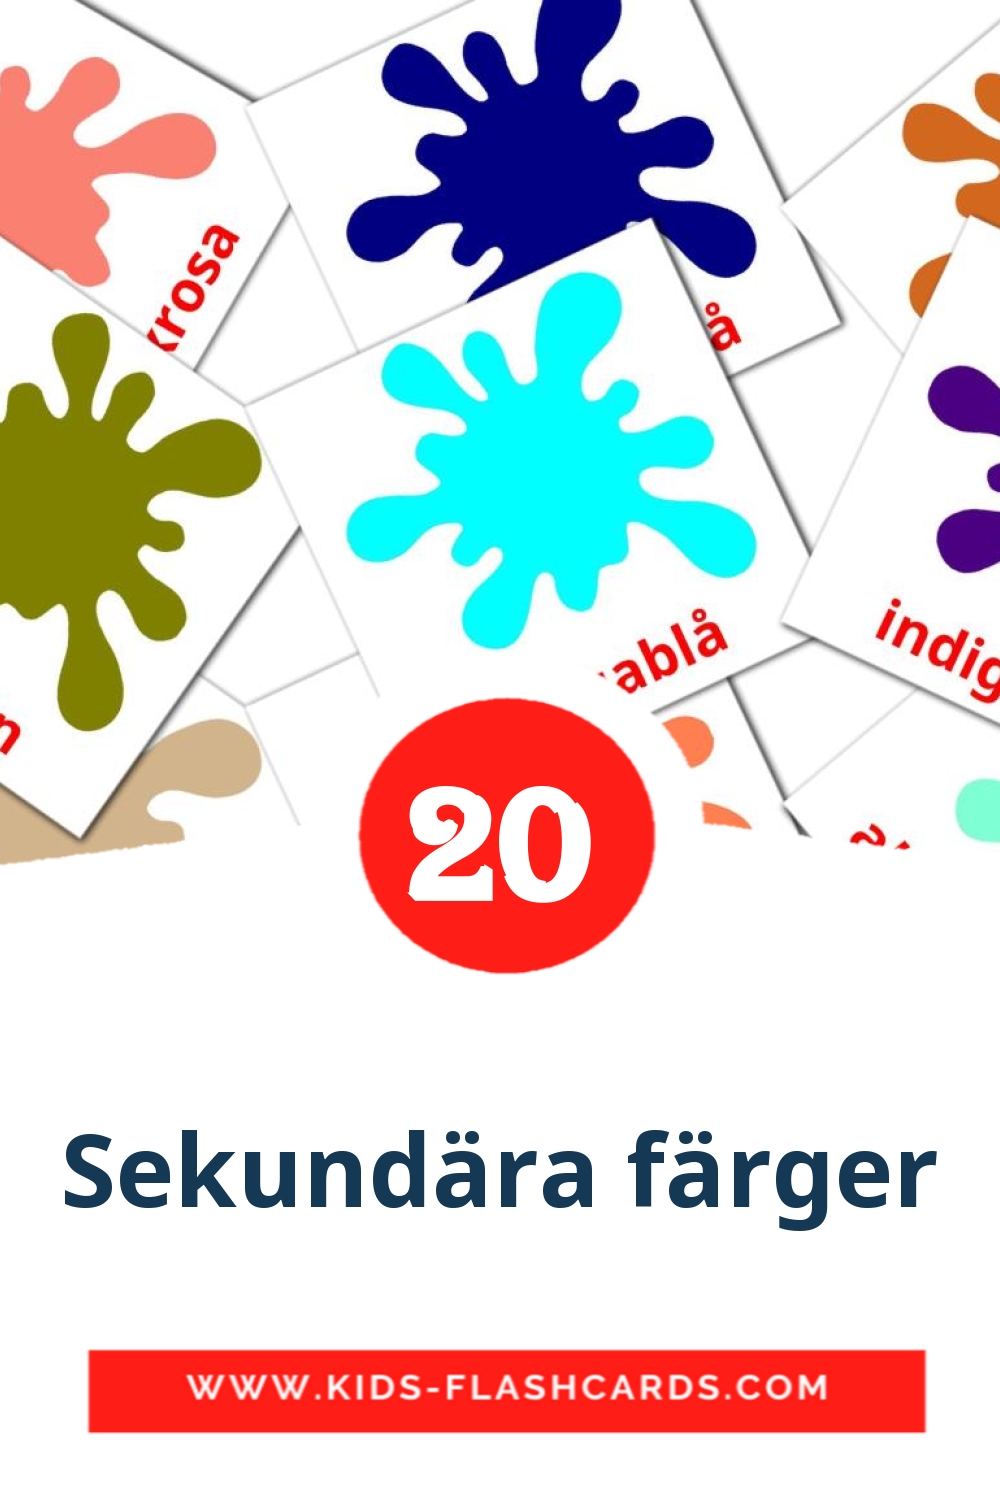 20 cartes illustrées de Sekundära färger pour la maternelle en suédois